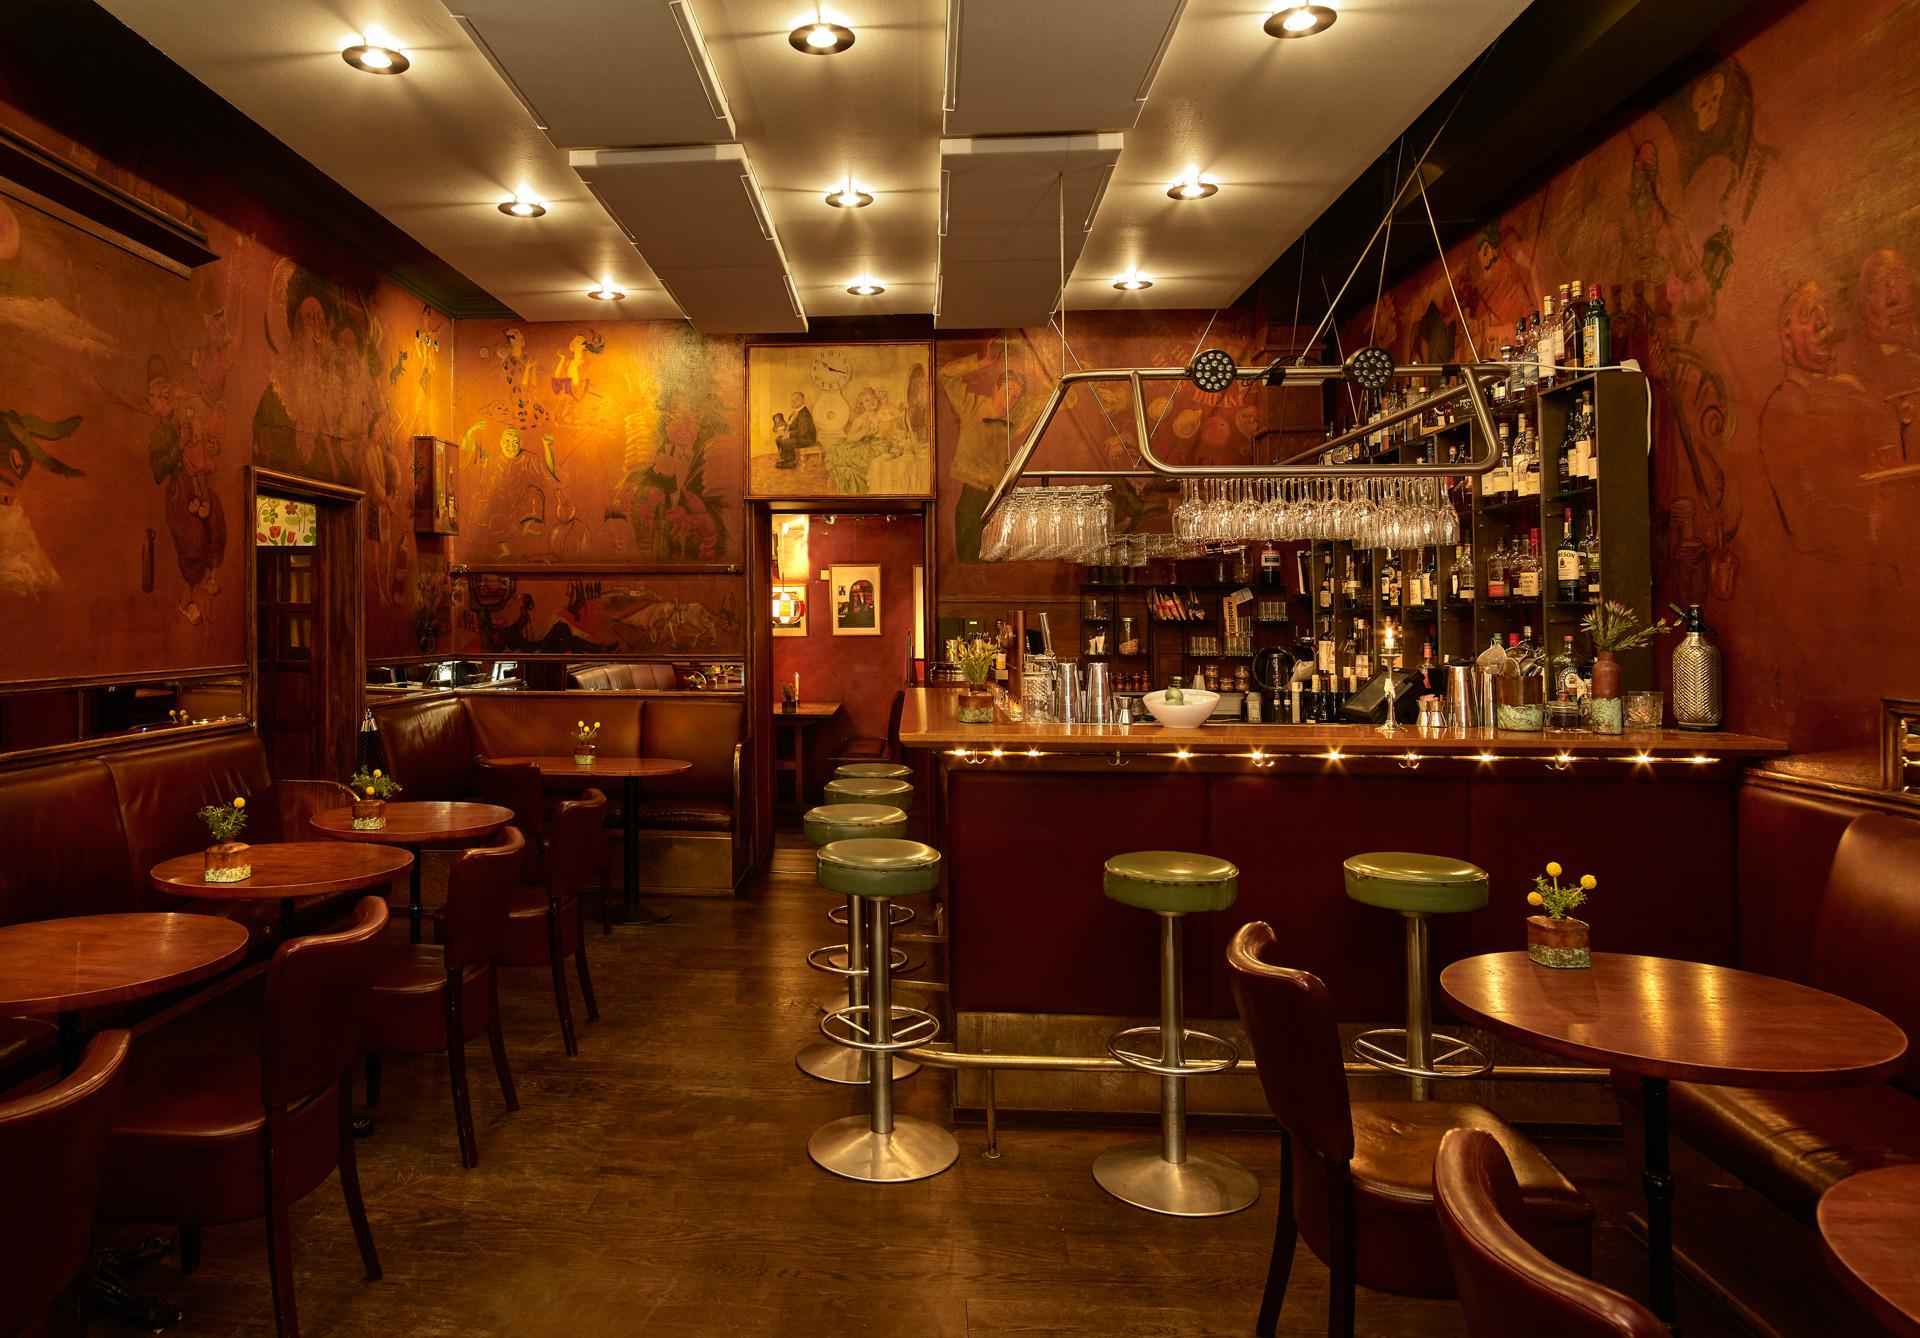 Die Bar im Konstnärsbaren mit dunklen Holzmöbeln.